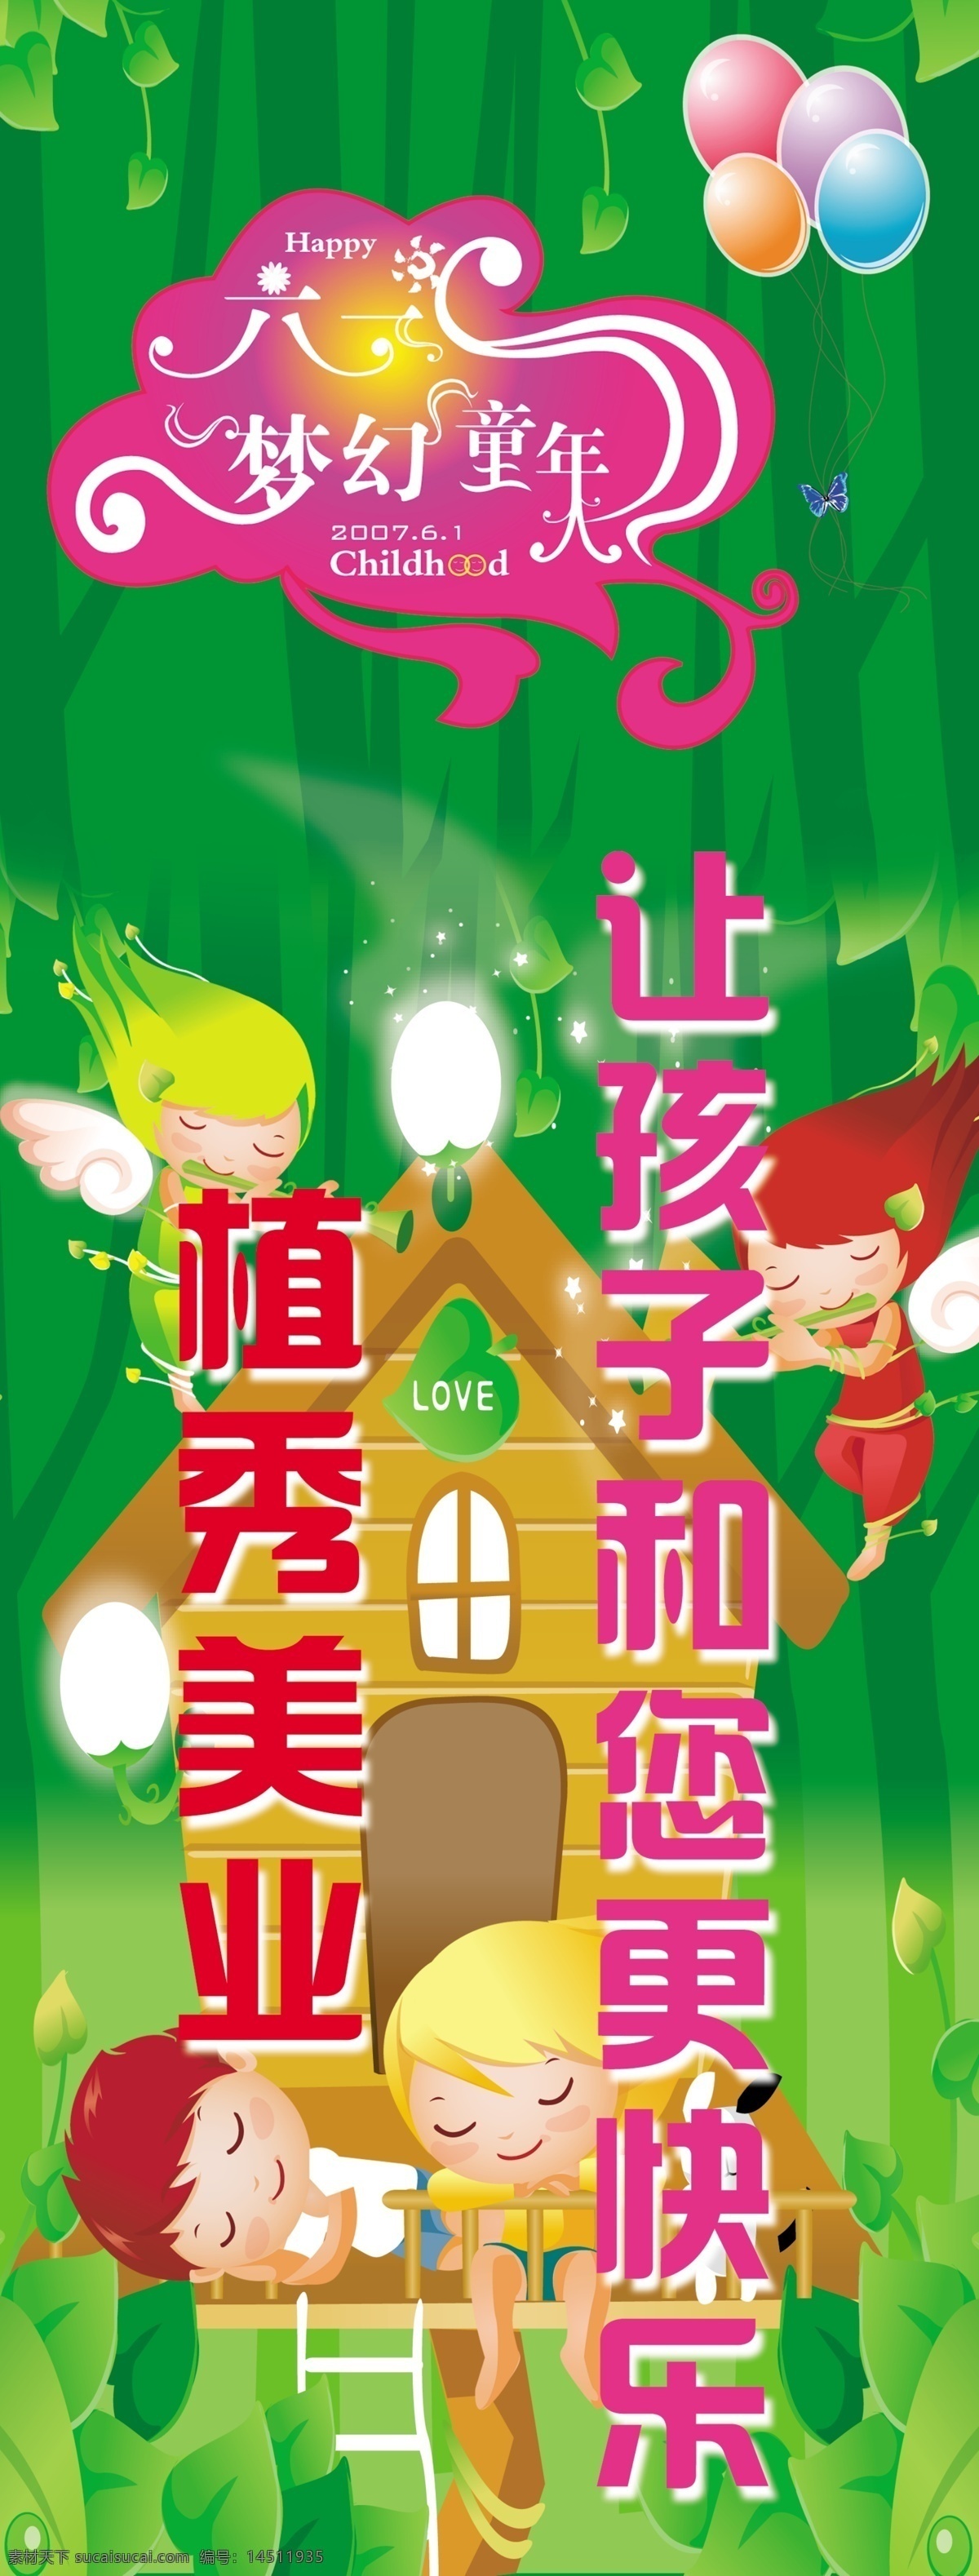 六 梦幻 童年 节日素材 卡通小朋友 六一梦幻童年 气球 源文件库 模板下载 六一儿童节